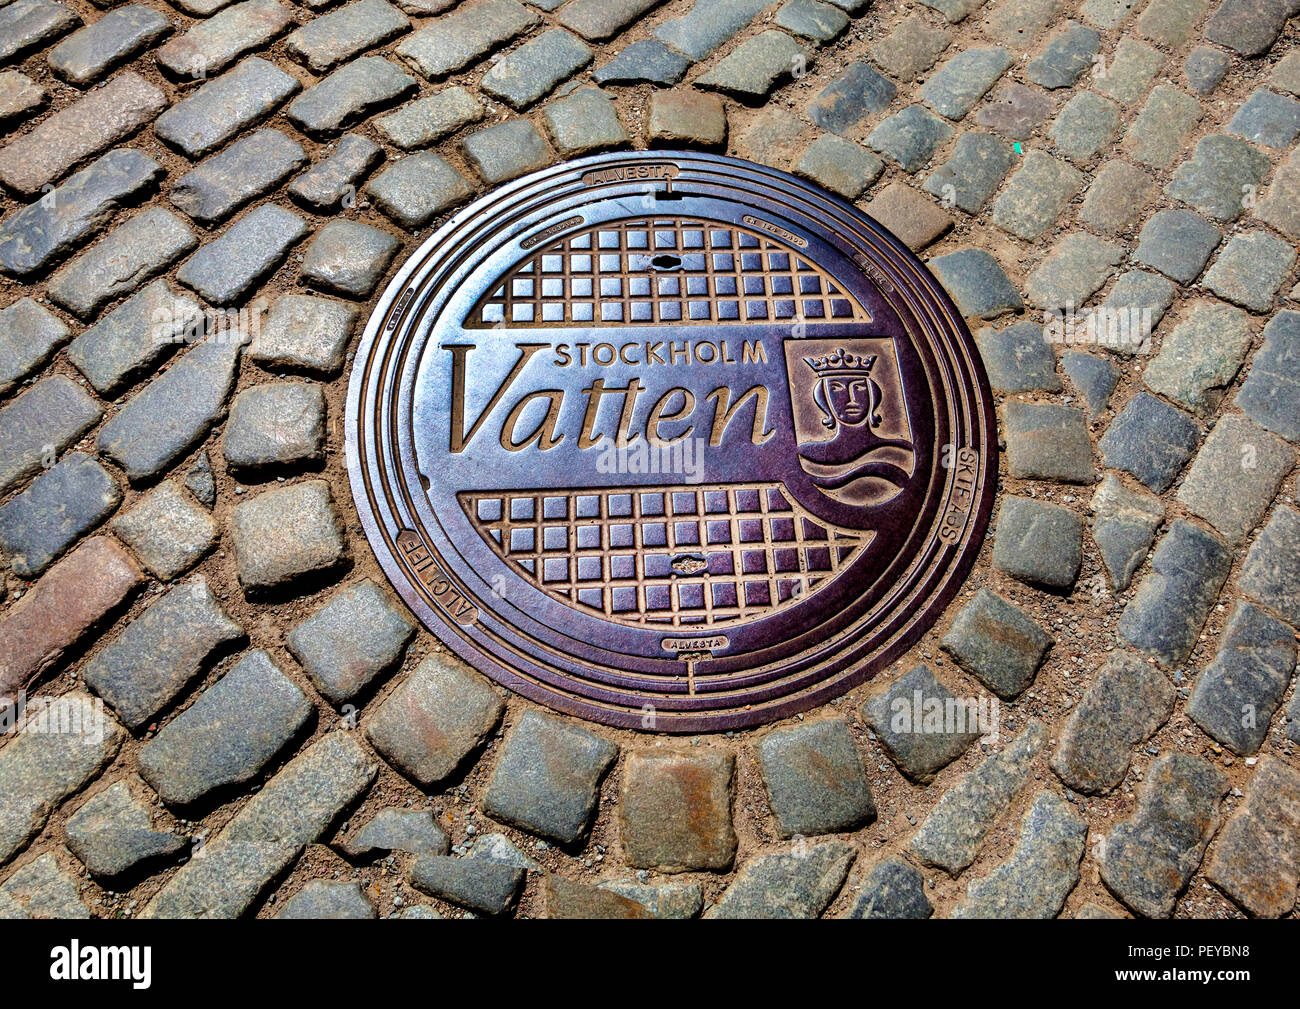 Cubierta de boca de alcantarilla en calle de adoquines en el casco antiguo de Estocolmo. Stockholm Vatten AB es una empresa de gestión de aguas y residuos en Suecia. Foto de stock